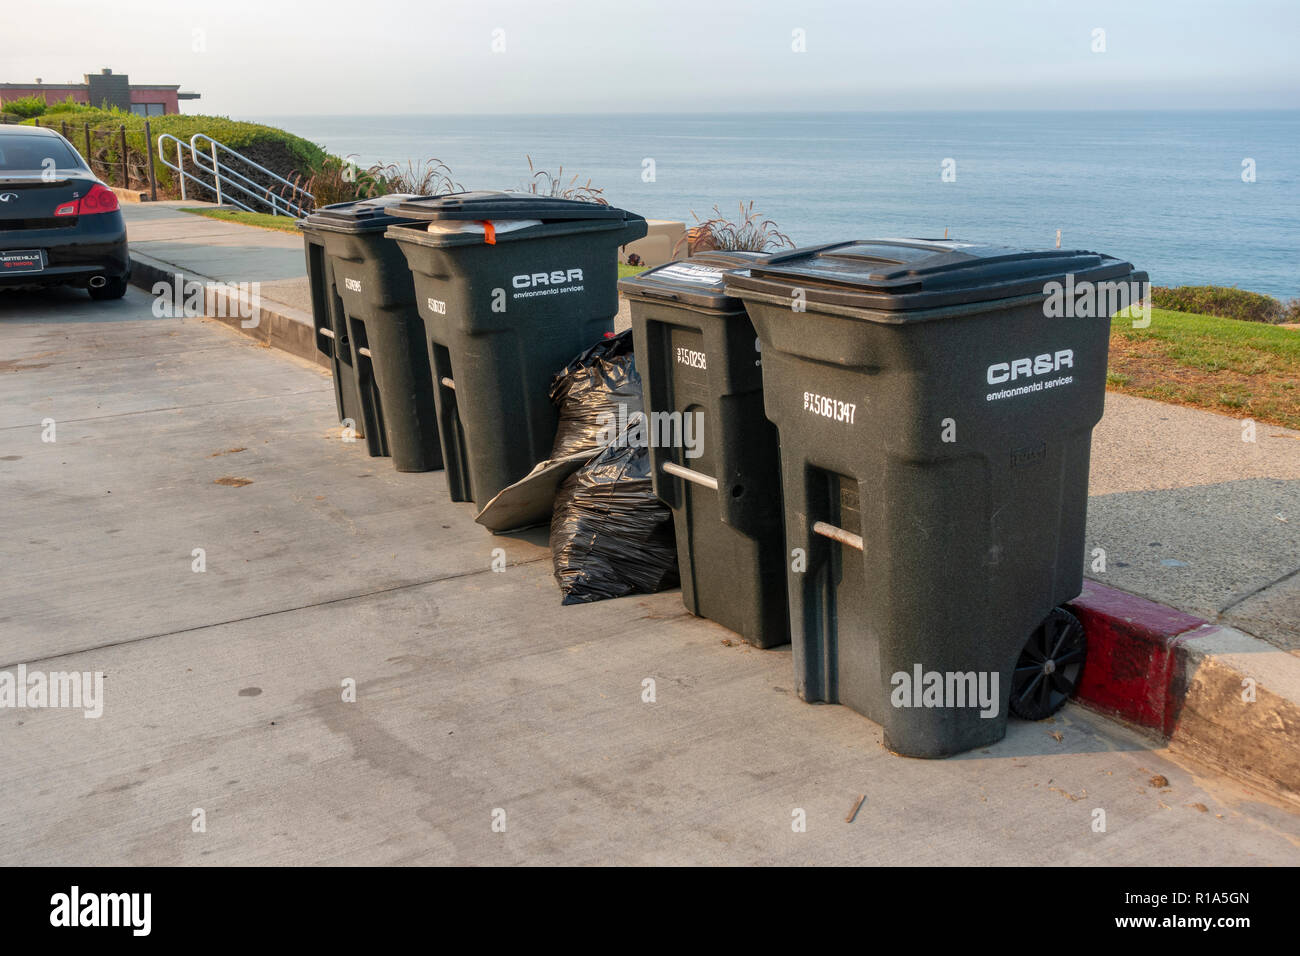 Côté Route les poubelles appartenant à CR&R Services environnementaux, Inspiration Point, plage d'État Corona del Mar, Californie, USA. Banque D'Images